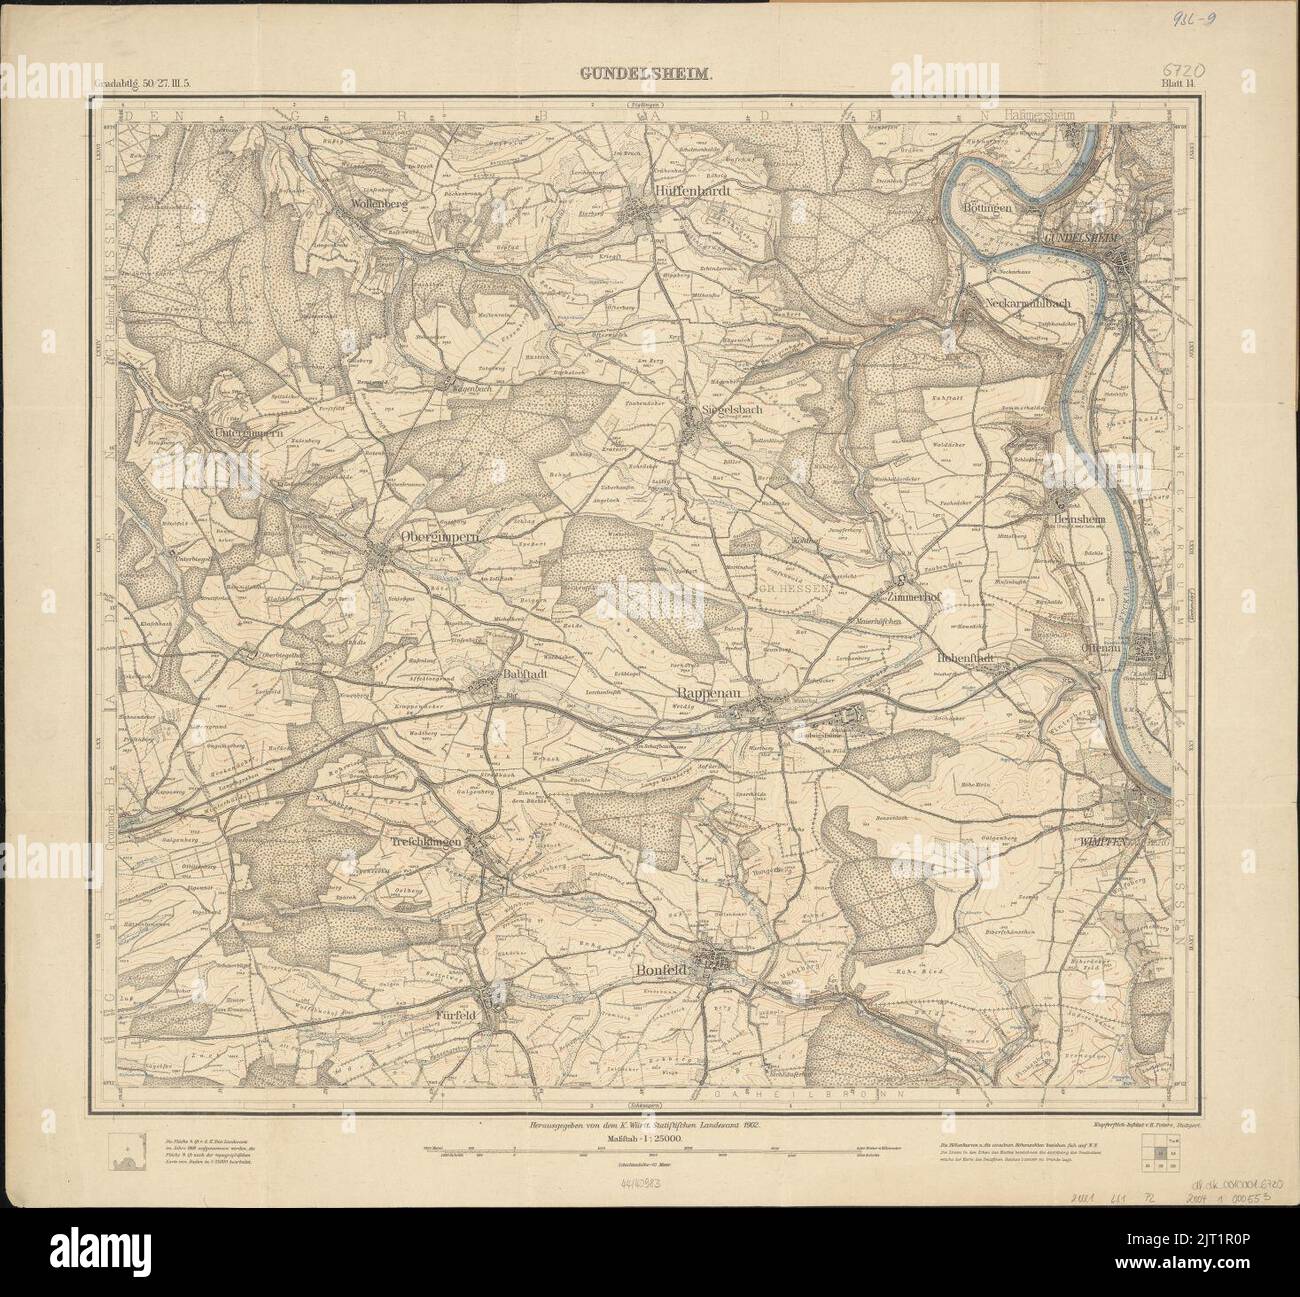 Topographische Karte 1 25000 Blatt 14 (6720) Gundelsheim 1902. Stock Photo